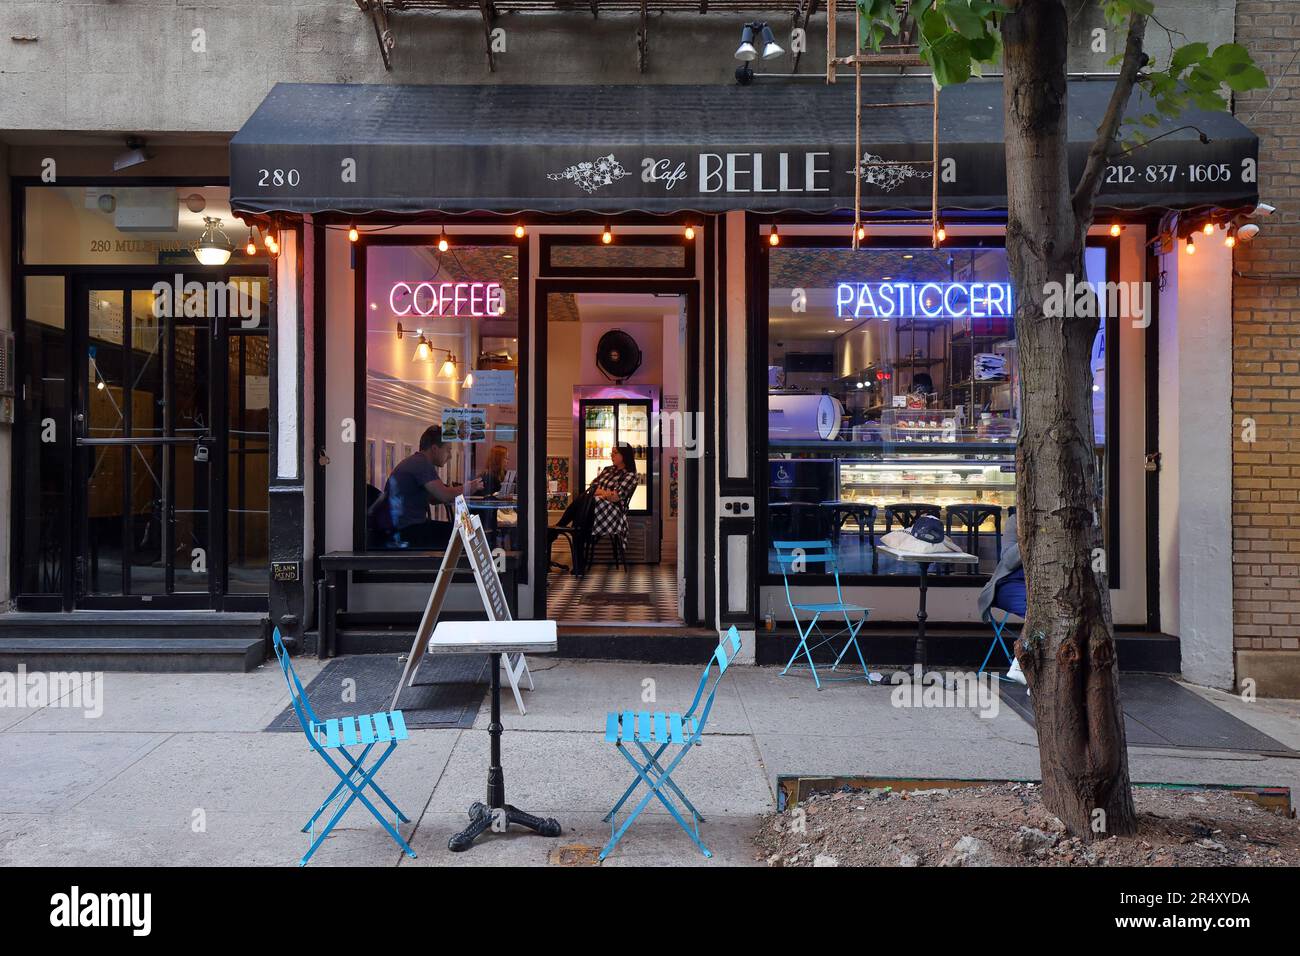 Cafè Belle, 280 Mulberry Street, New York, foto di un negozio di pasticceria italiana nel quartiere Little Italy/Nolita di Manhattan. Foto Stock